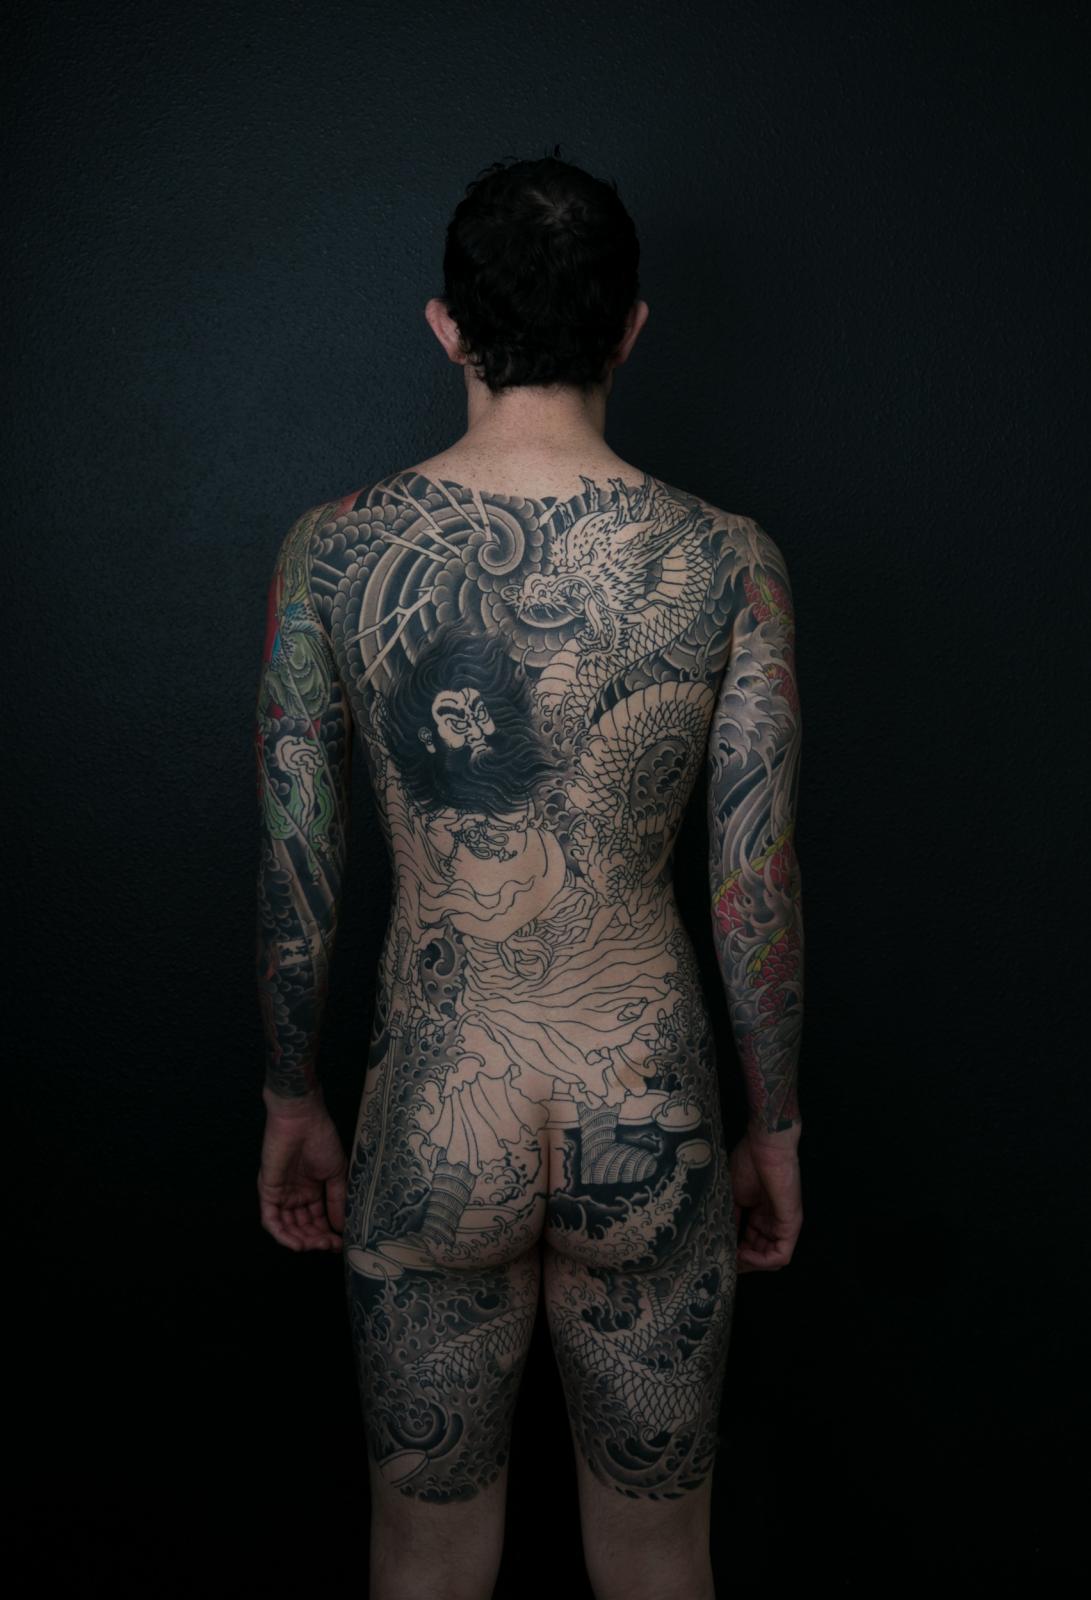 04 heafy tattoos 1 Photo by Ashley Heafy